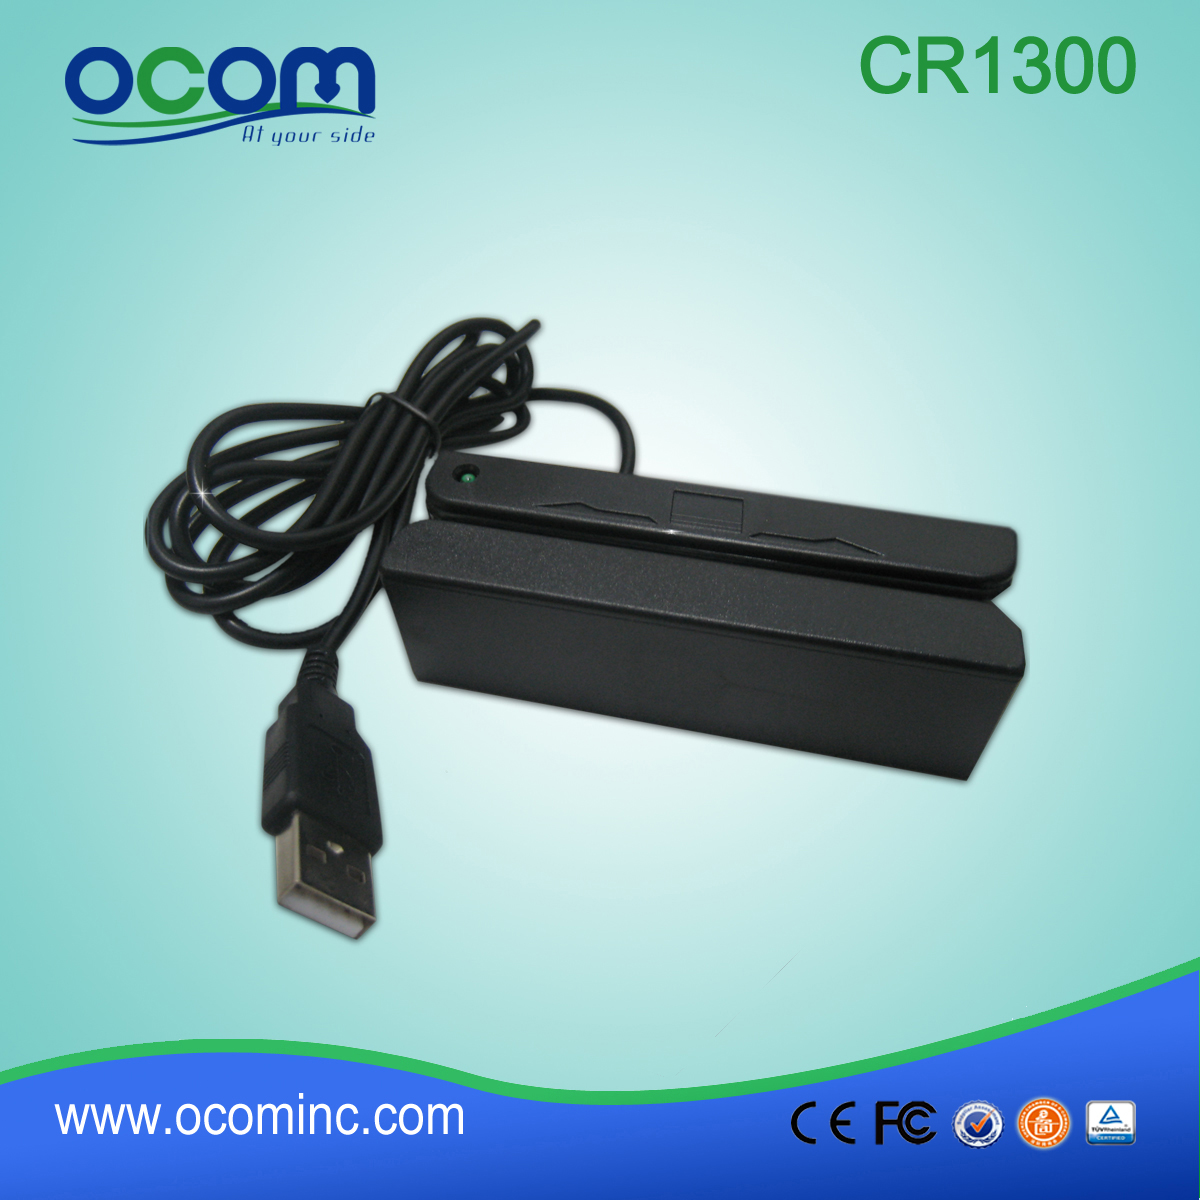 CR1300 OCOM magnetic card reader for GPS tracker